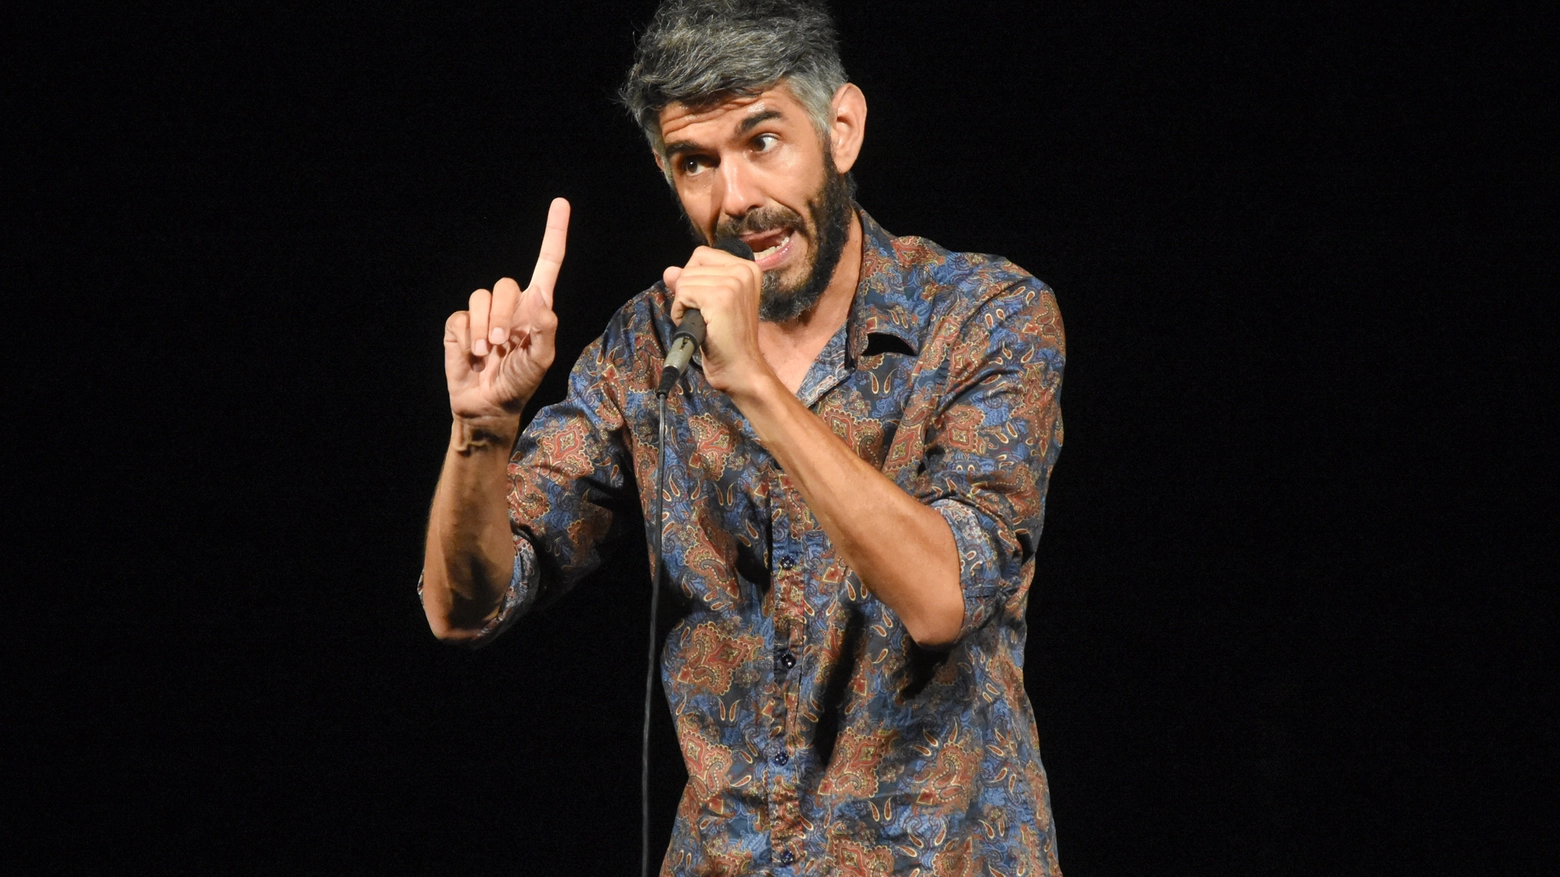 Il campione mondiale di Poetry Slam ad Arezzo con il suo mix divertente e originale tra poesia performativa e stand up comedy